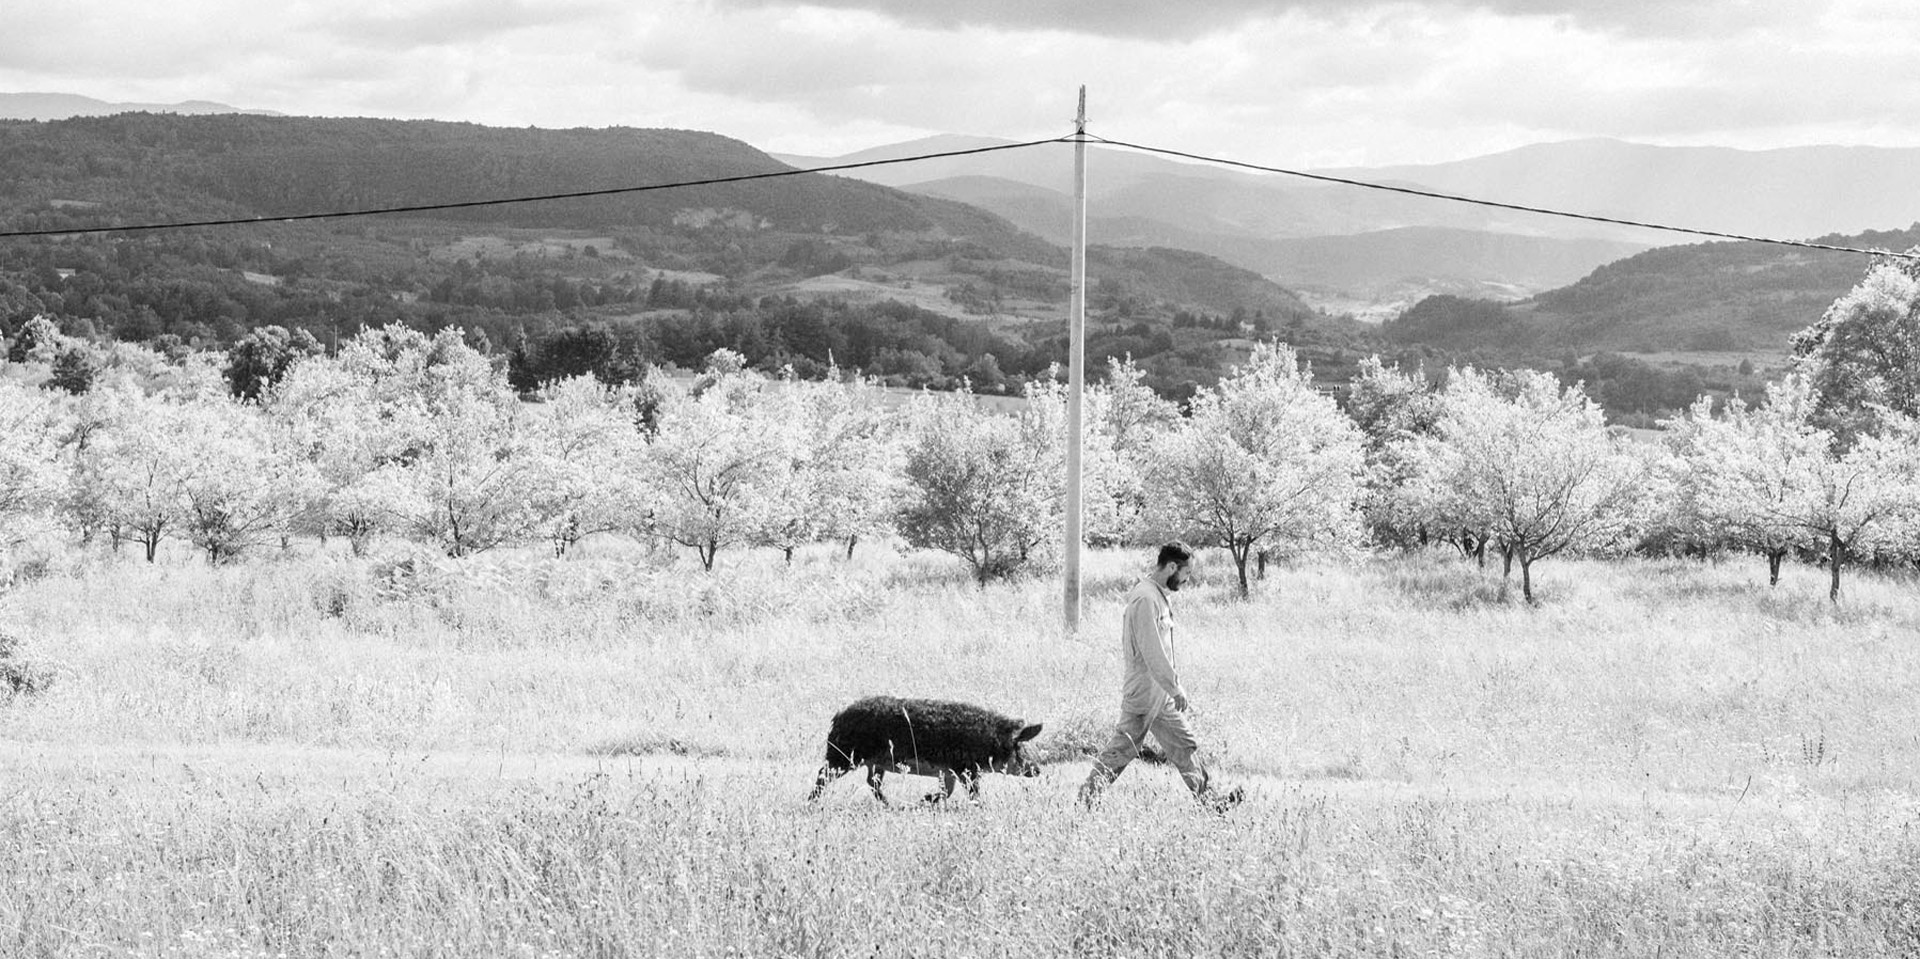 A man walks across scrubland followed by a truffle hog.